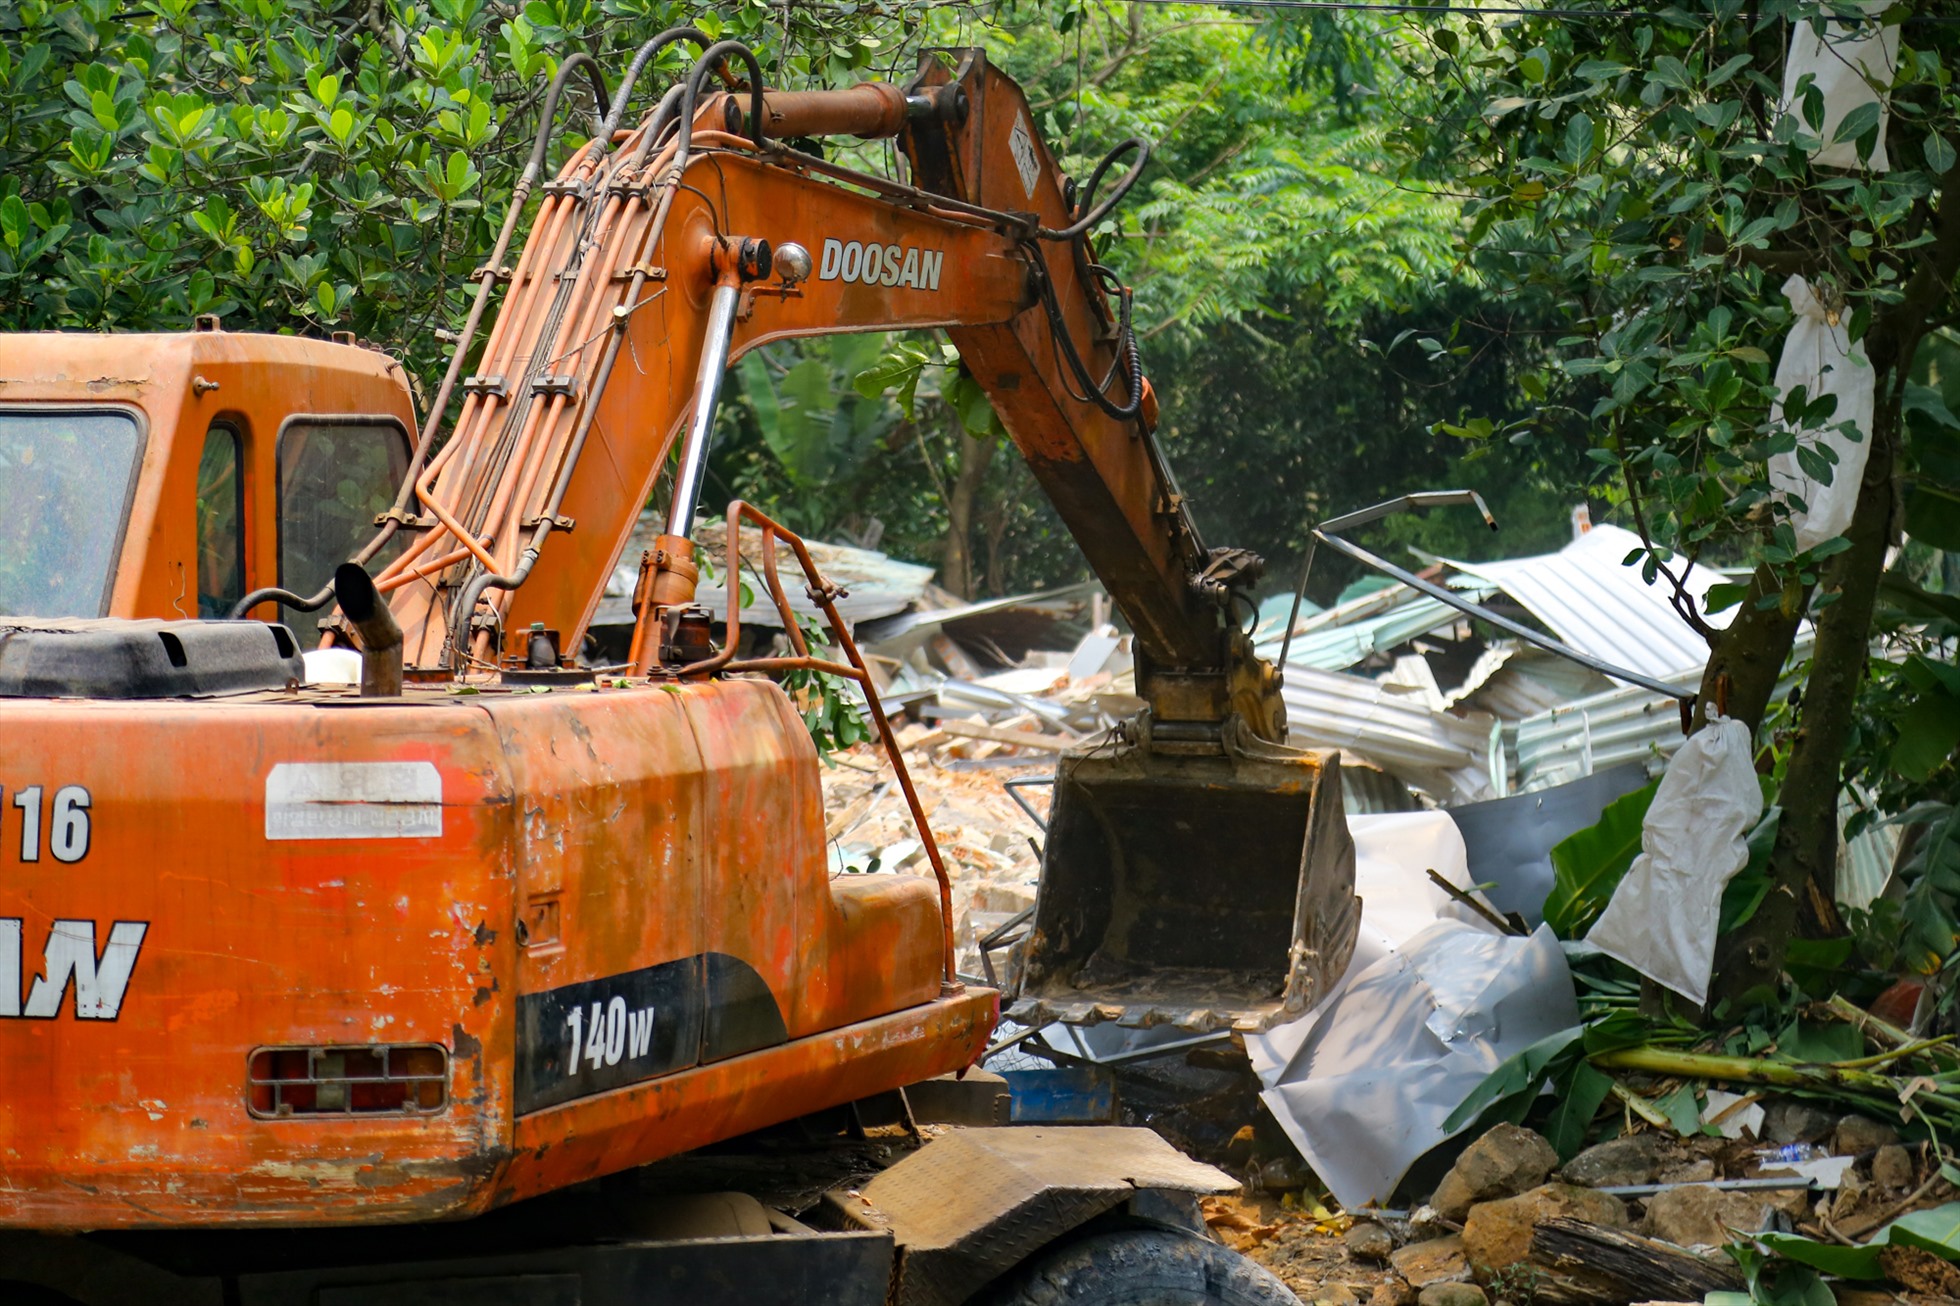 Những trường hợp sai phạm trước đó đã bị xử phạt hành chính từ 5 đến 12.5 triệu đồng vì tự ý chuyển đổi mục đích sử dụng đất và xây dựng các công trình kiên cố trên đất rừng ở bán đảo Sơn Trà mặc dù không được cơ quan thẩm quyền cho phép.